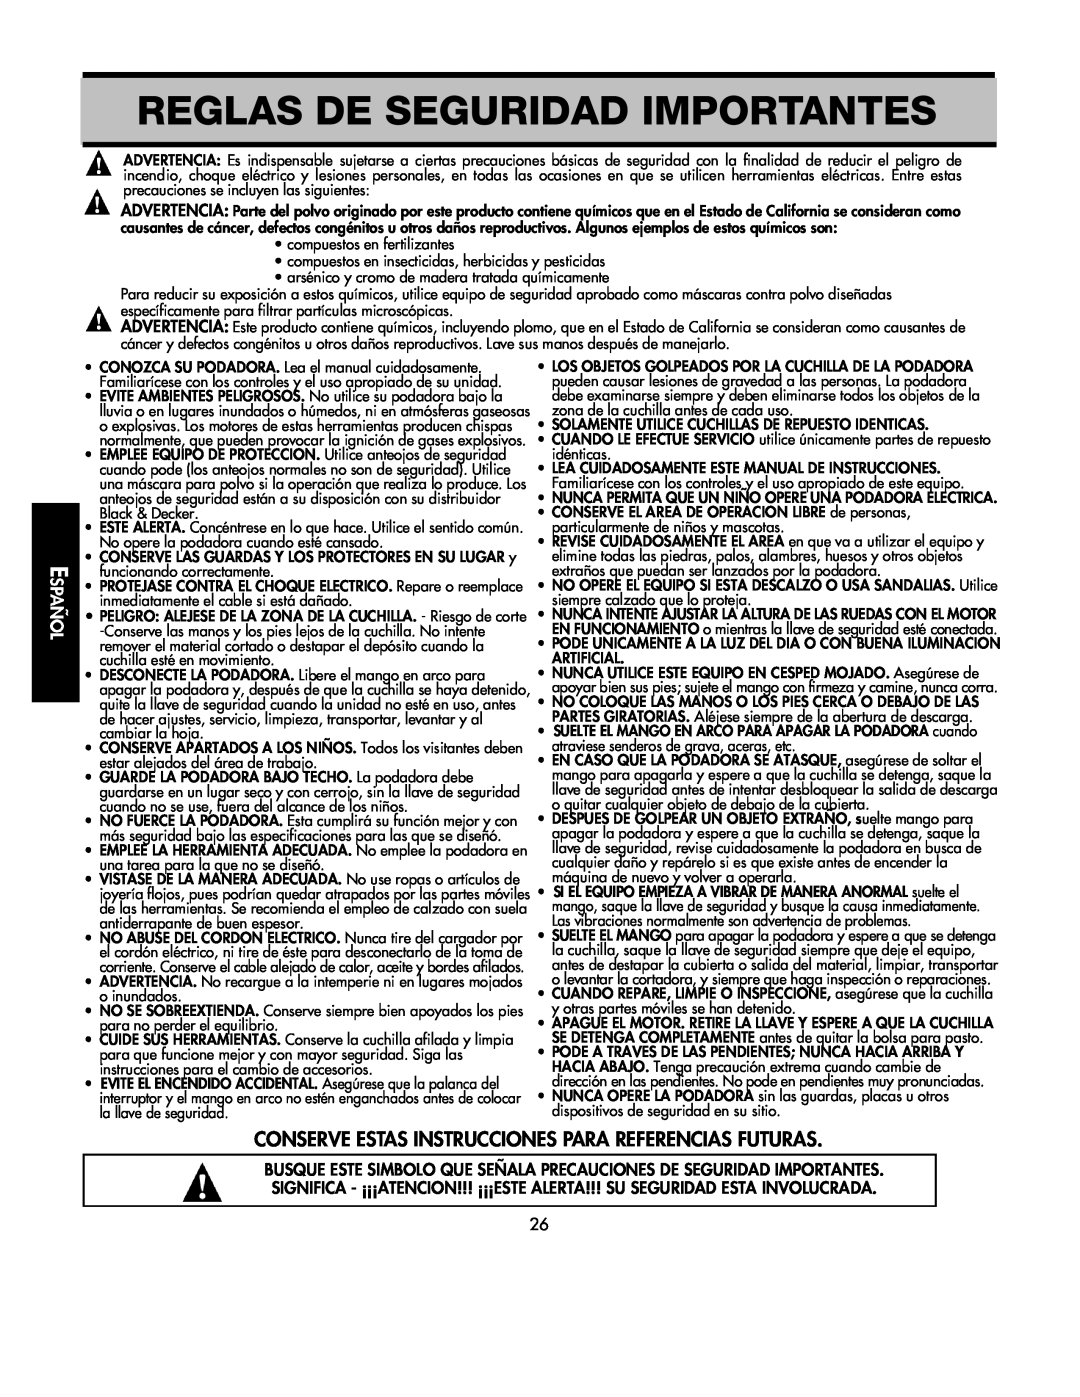 Black & Decker 598968-00 Reglas De Seguridad Importantes, Conserve Estas Instrucciones Para Referencias Futuras 